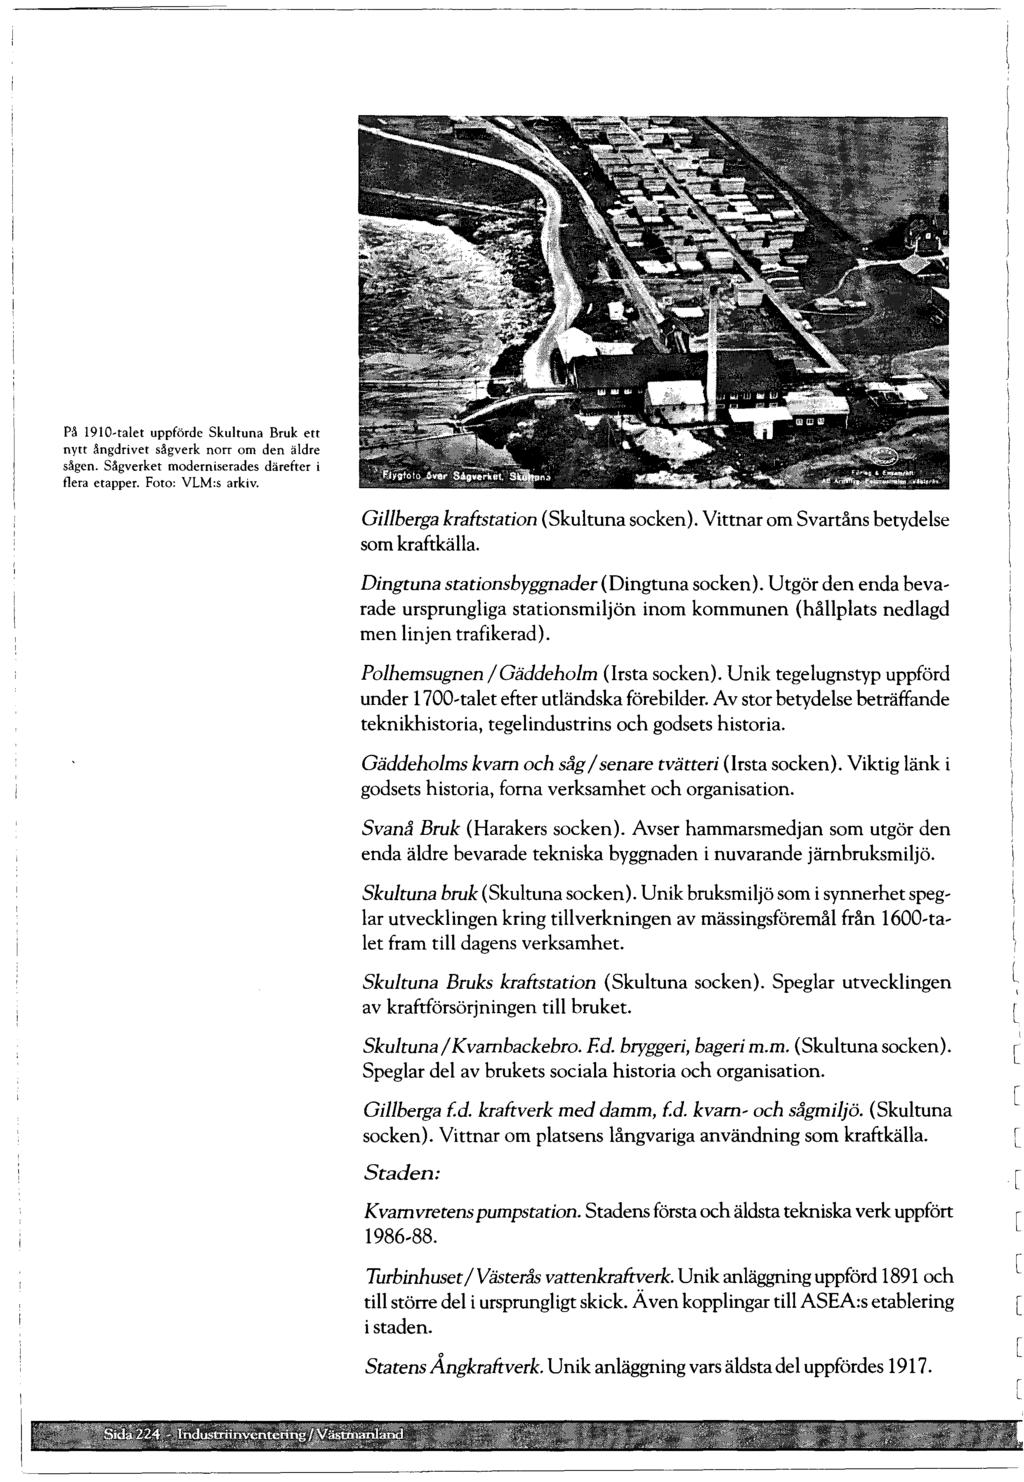 På 1910-taet uppförde Skutuna Bruk ett nytt ångdrivet sågverk norr om den ädre sågen. Sågverket moderniserades därefter i fera etapper. Foto: VLM:s arkiv. Giberga kraftstation (Skutuna socken).